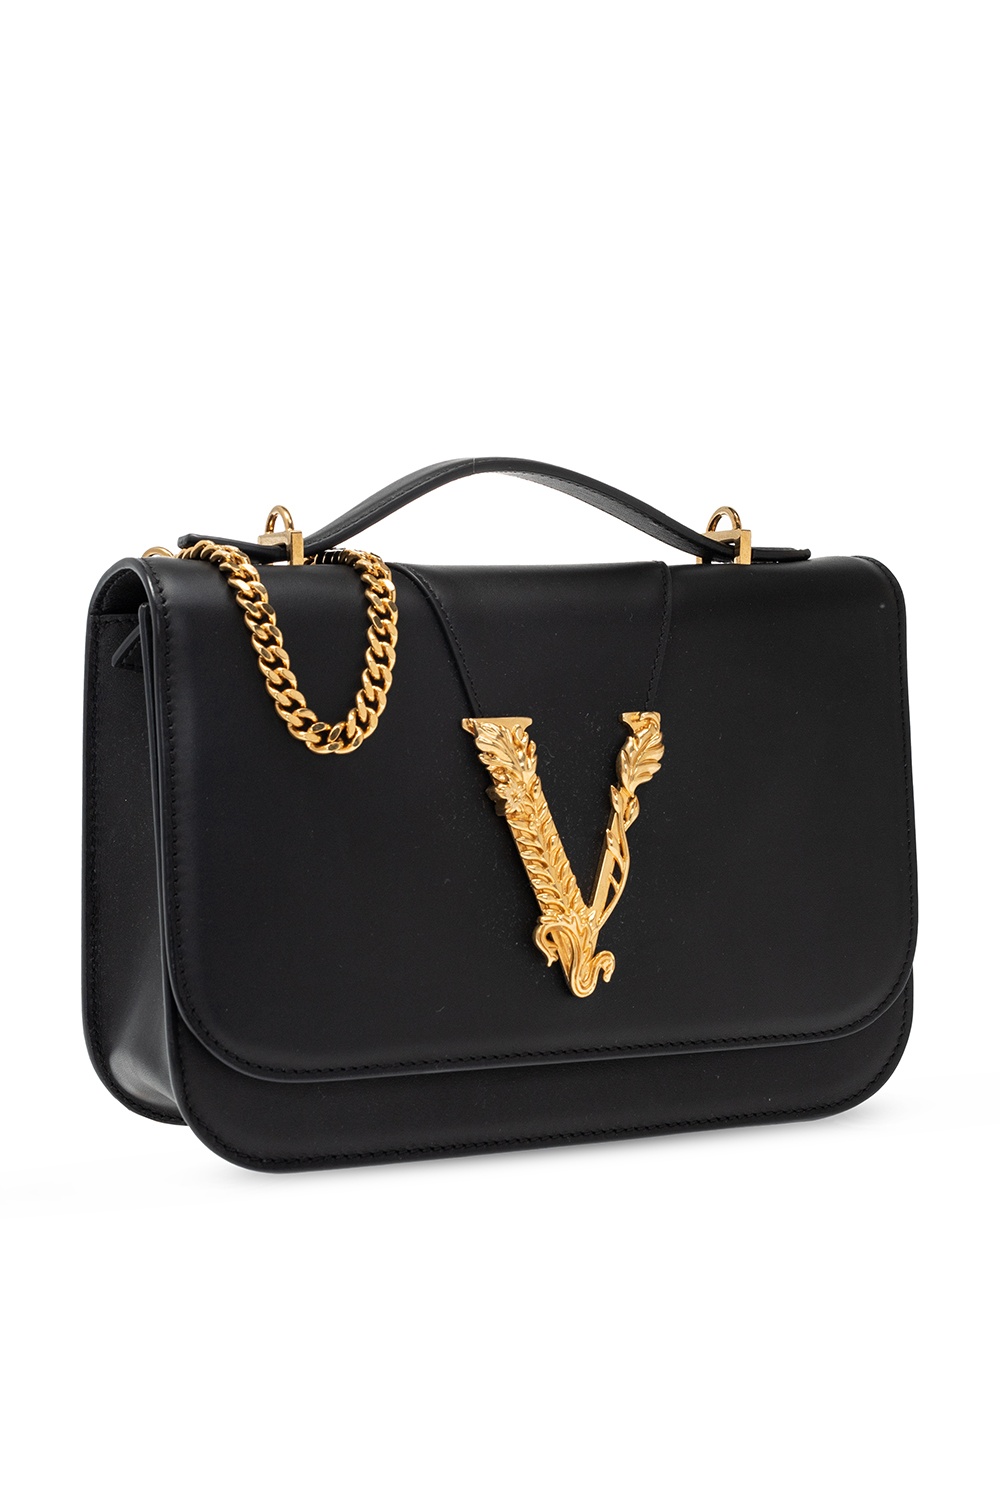 Versace Women's 100% Textured Leather Handbag V-Logo Tote Shoulder Bag 